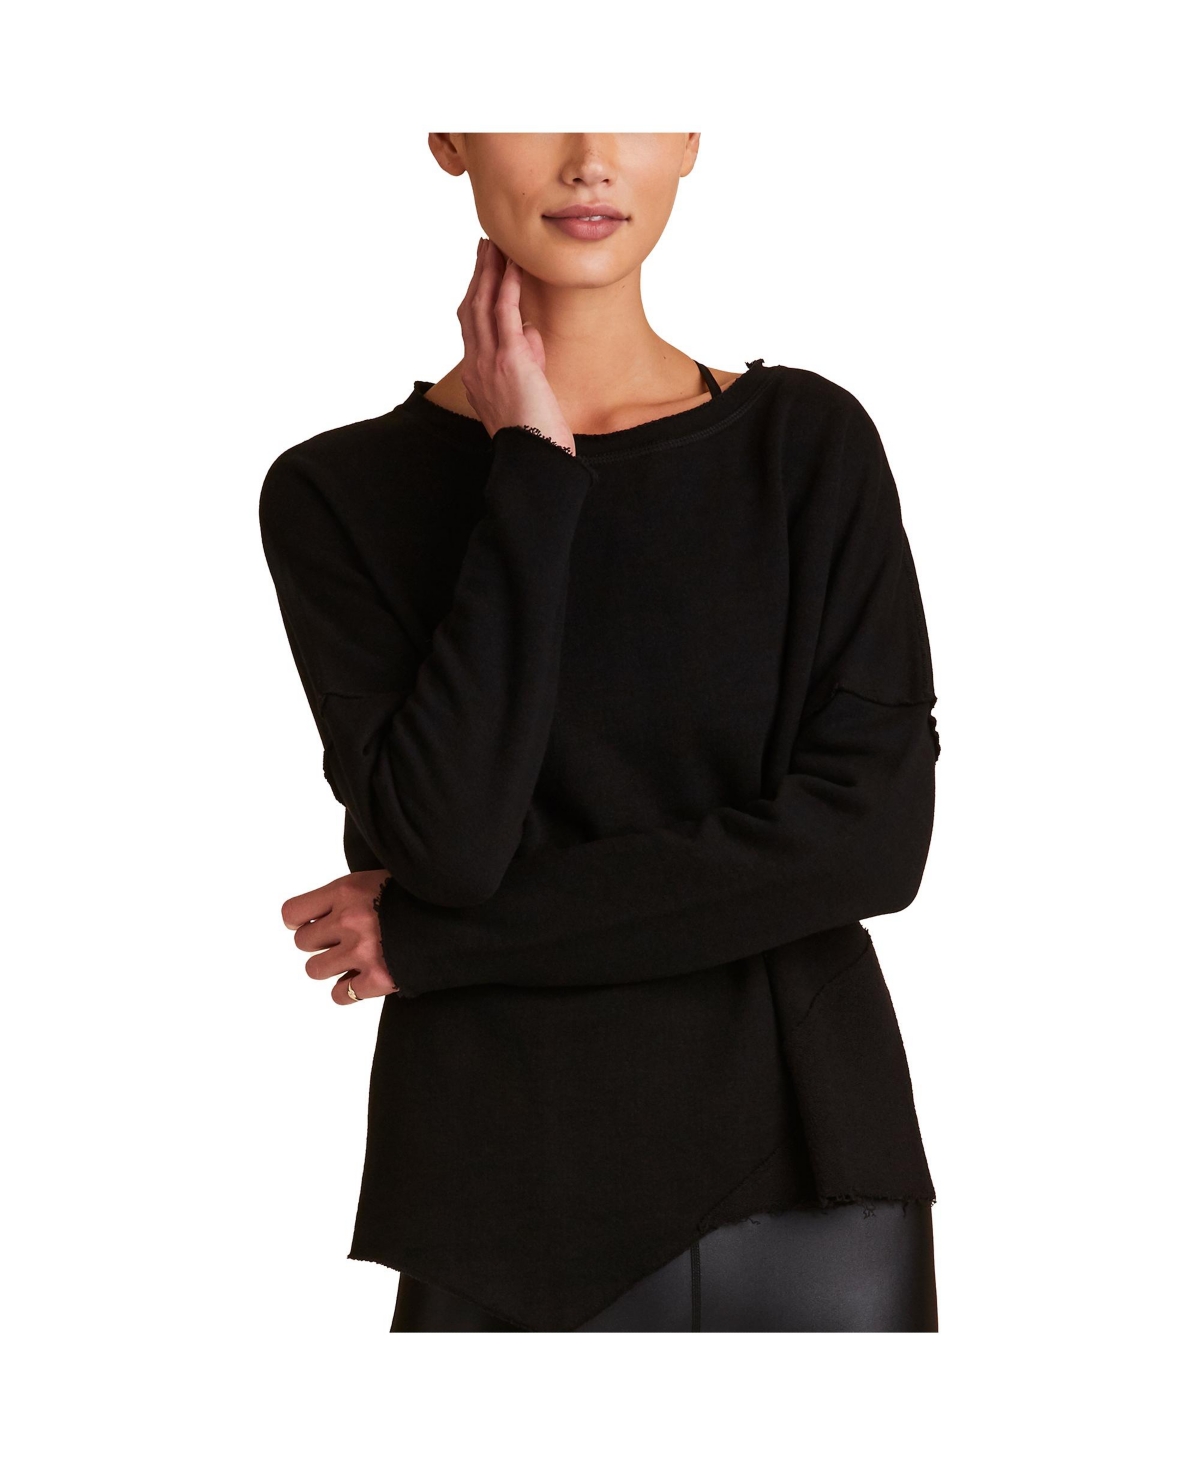 Adult Women Exhale Sweatshirt - Black